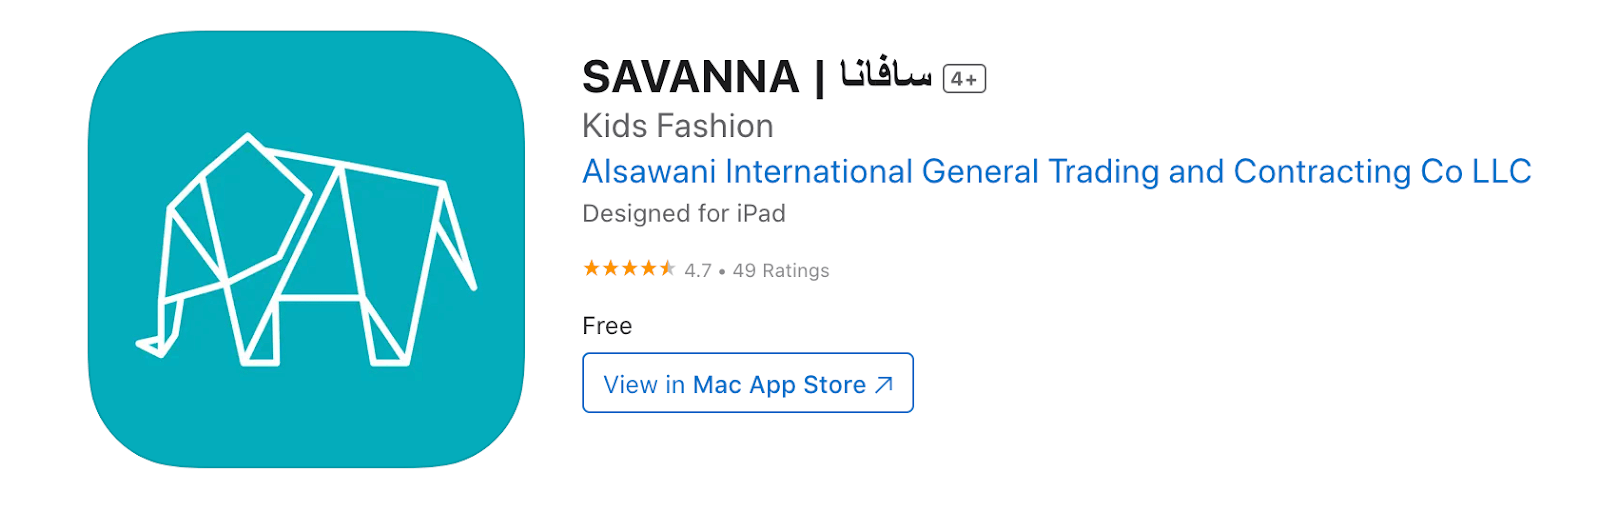 Savanna App Store